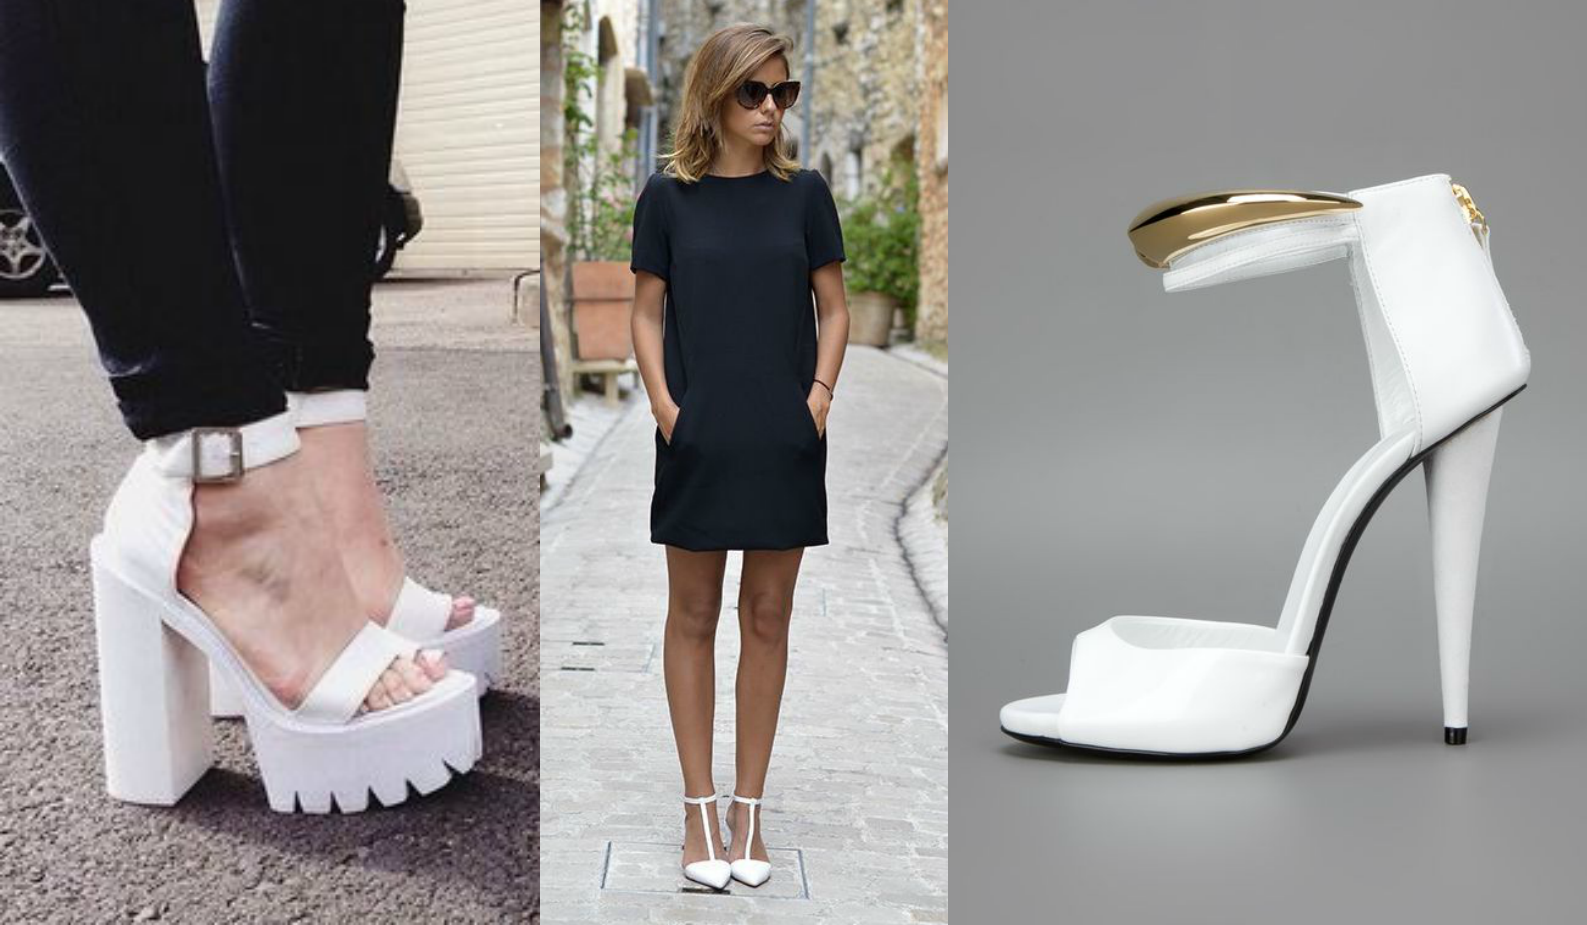 moda | moda 2016 | dicas de moda | sapato branco feminino | sapato branco | passarela | scarpin branco | como usar sapato branco